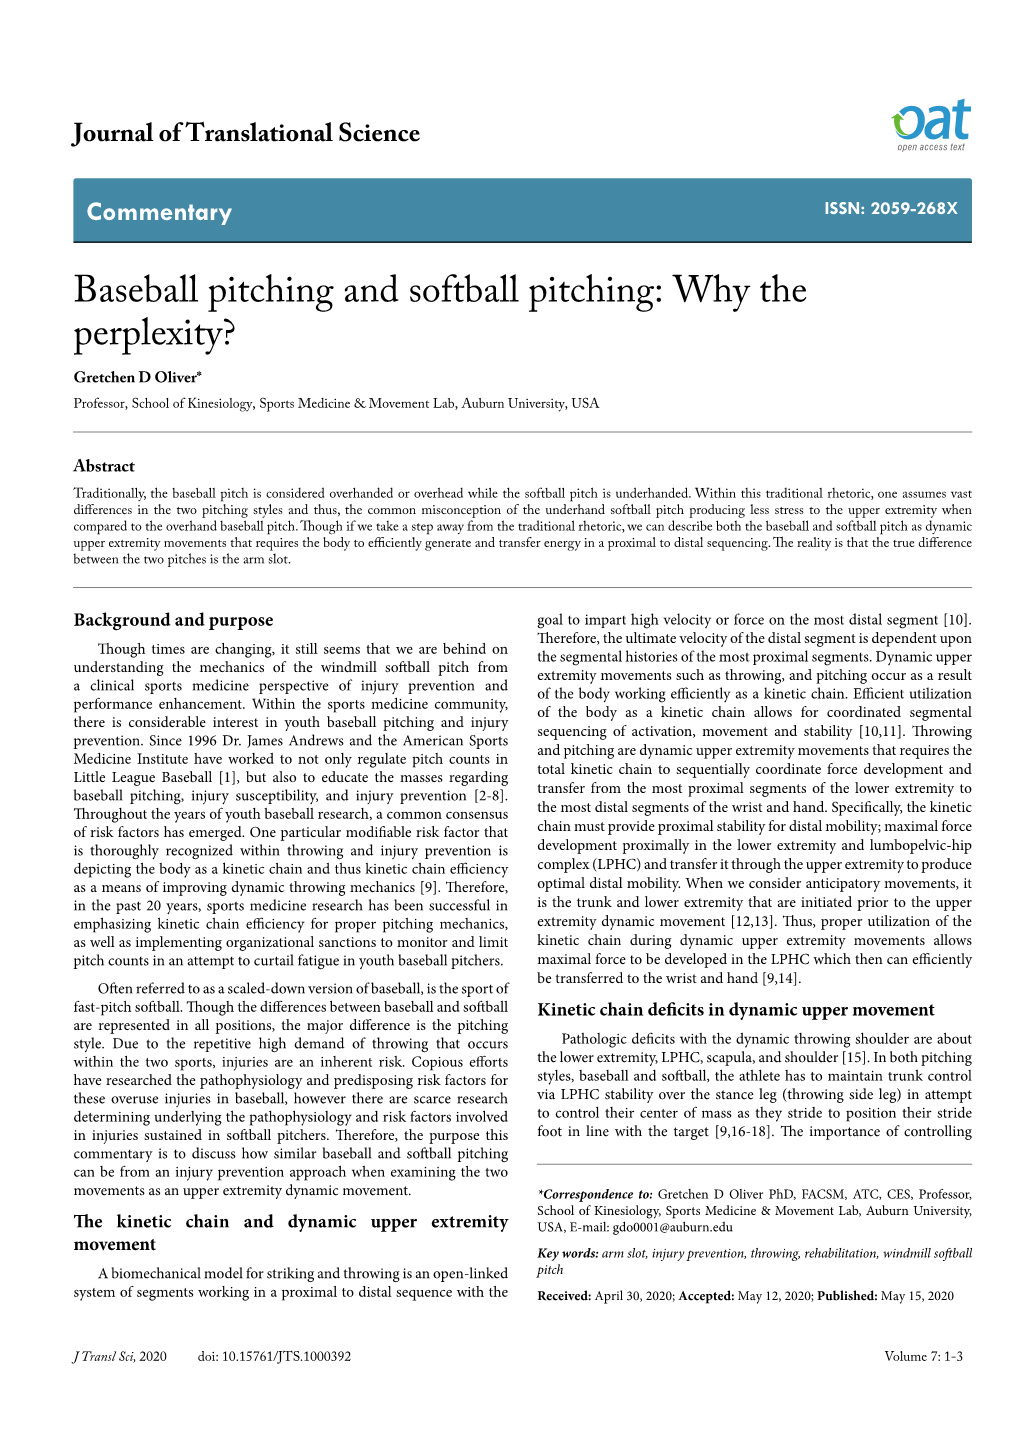 Baseball Pitching and Softball Pitching